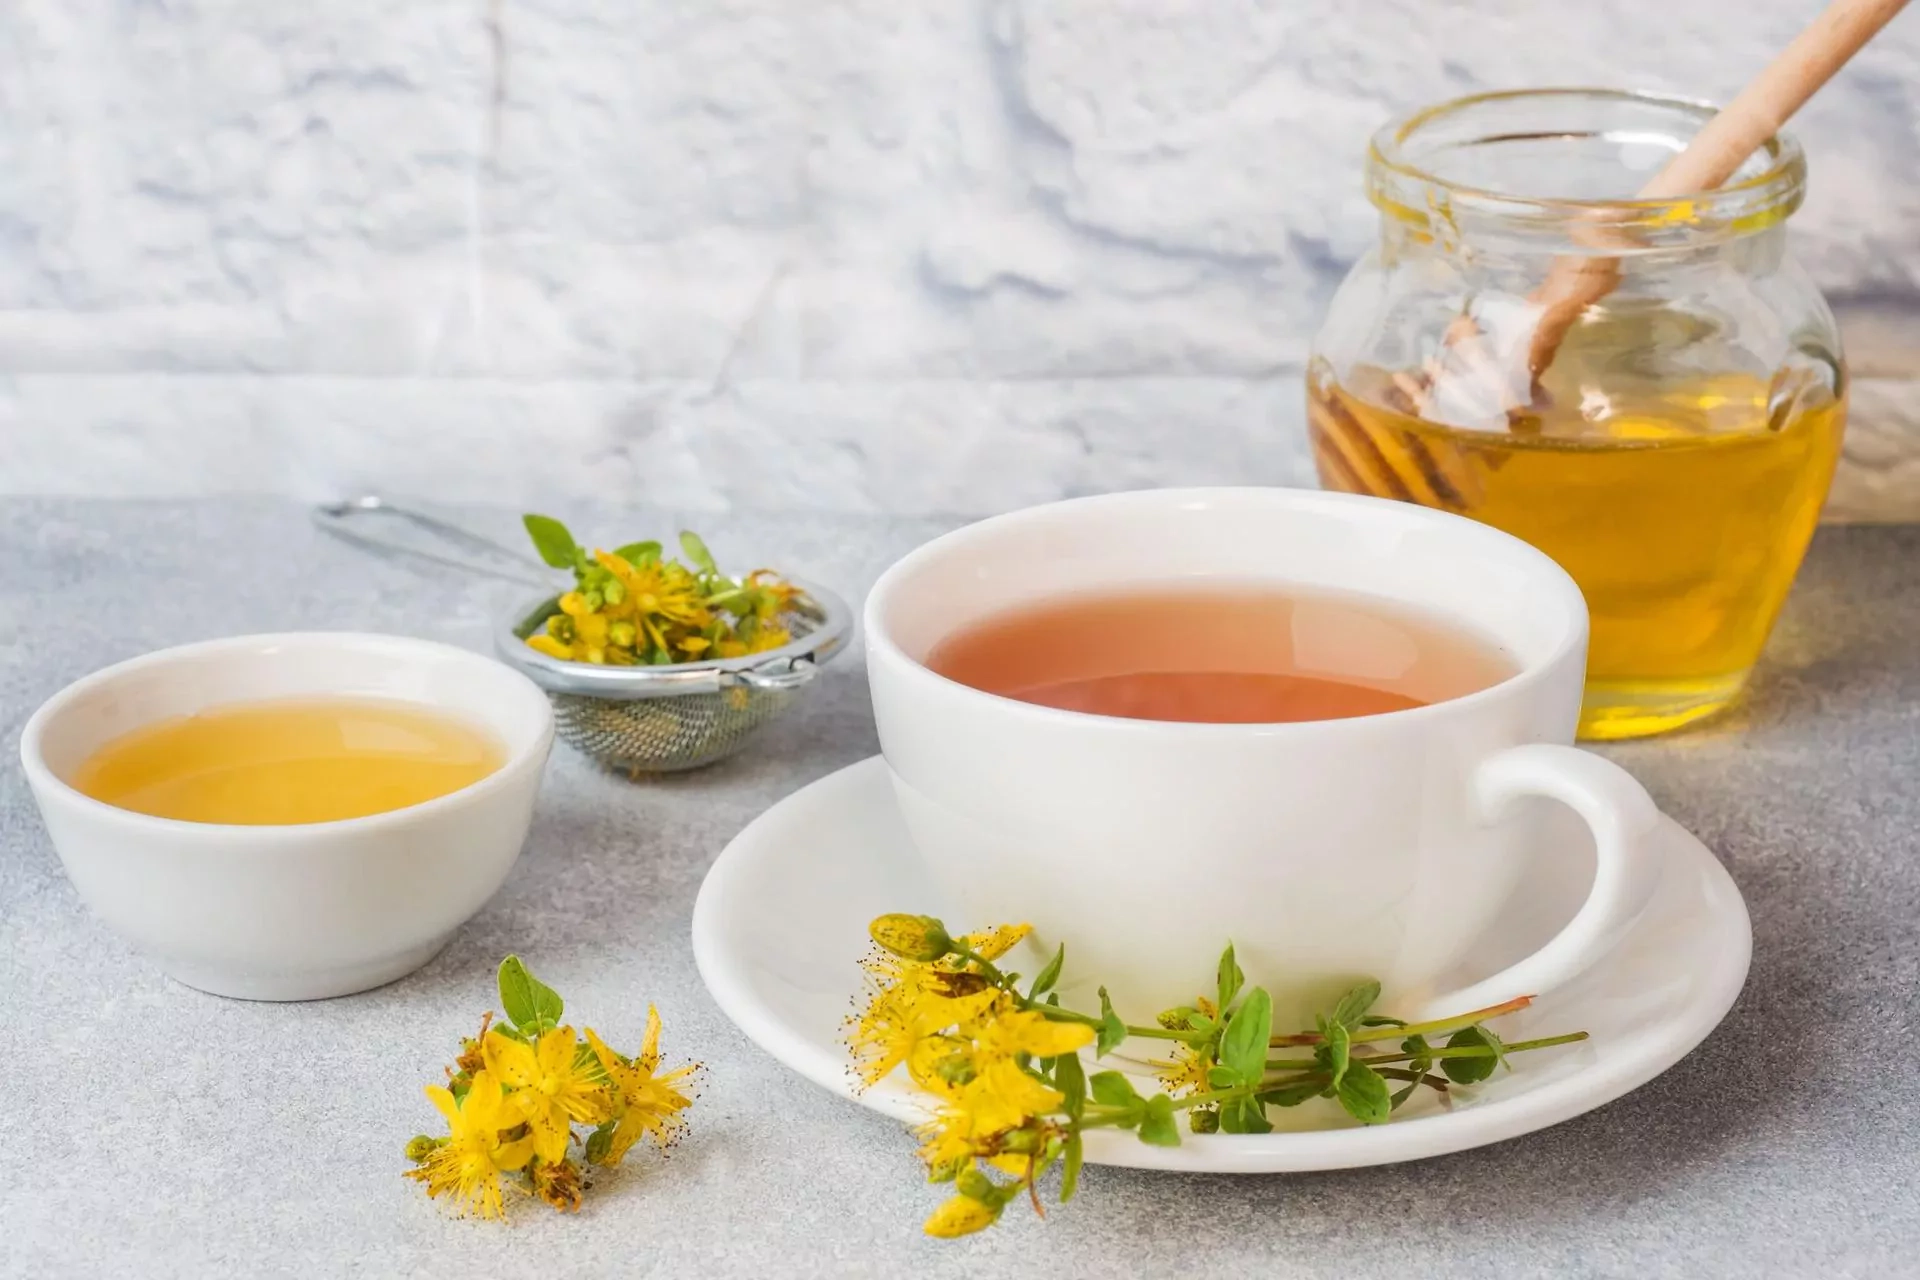 Jonažolių arbata (kaip gerti; atsiliepimai; nuo depresijos; nauda ir šalutinis poveikis)